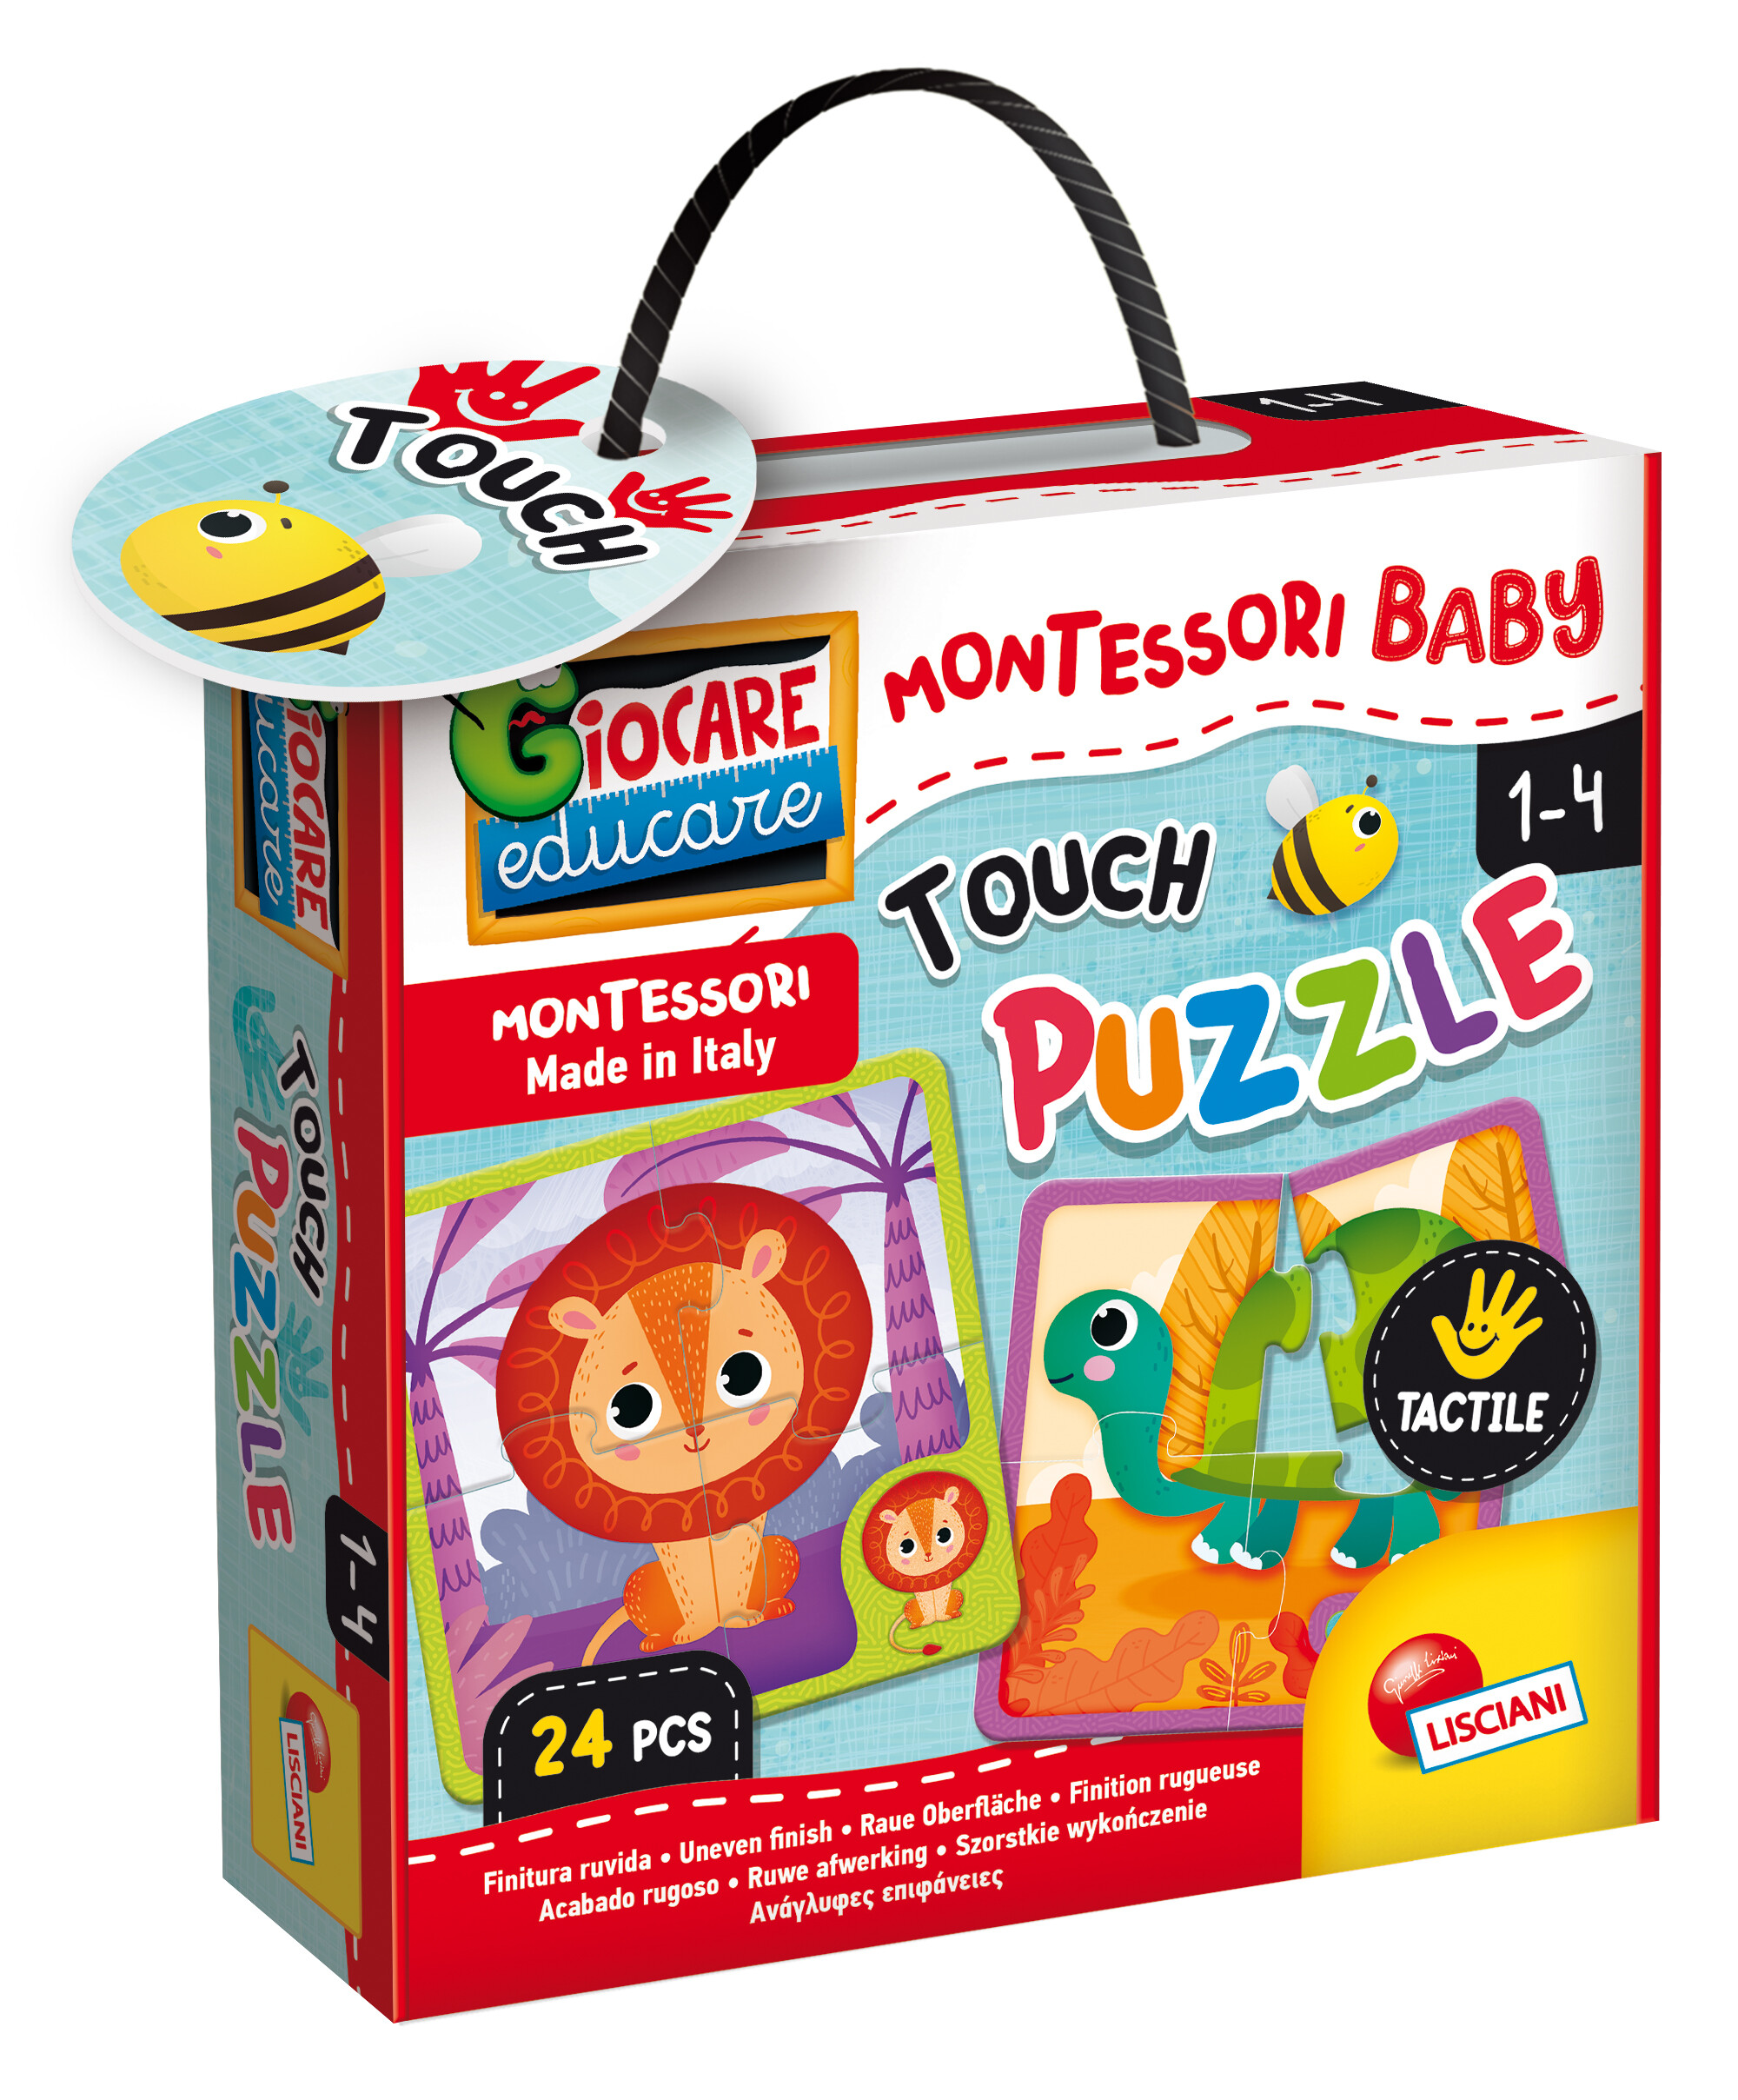 Montessori baby touch puzzle - LISCIANI